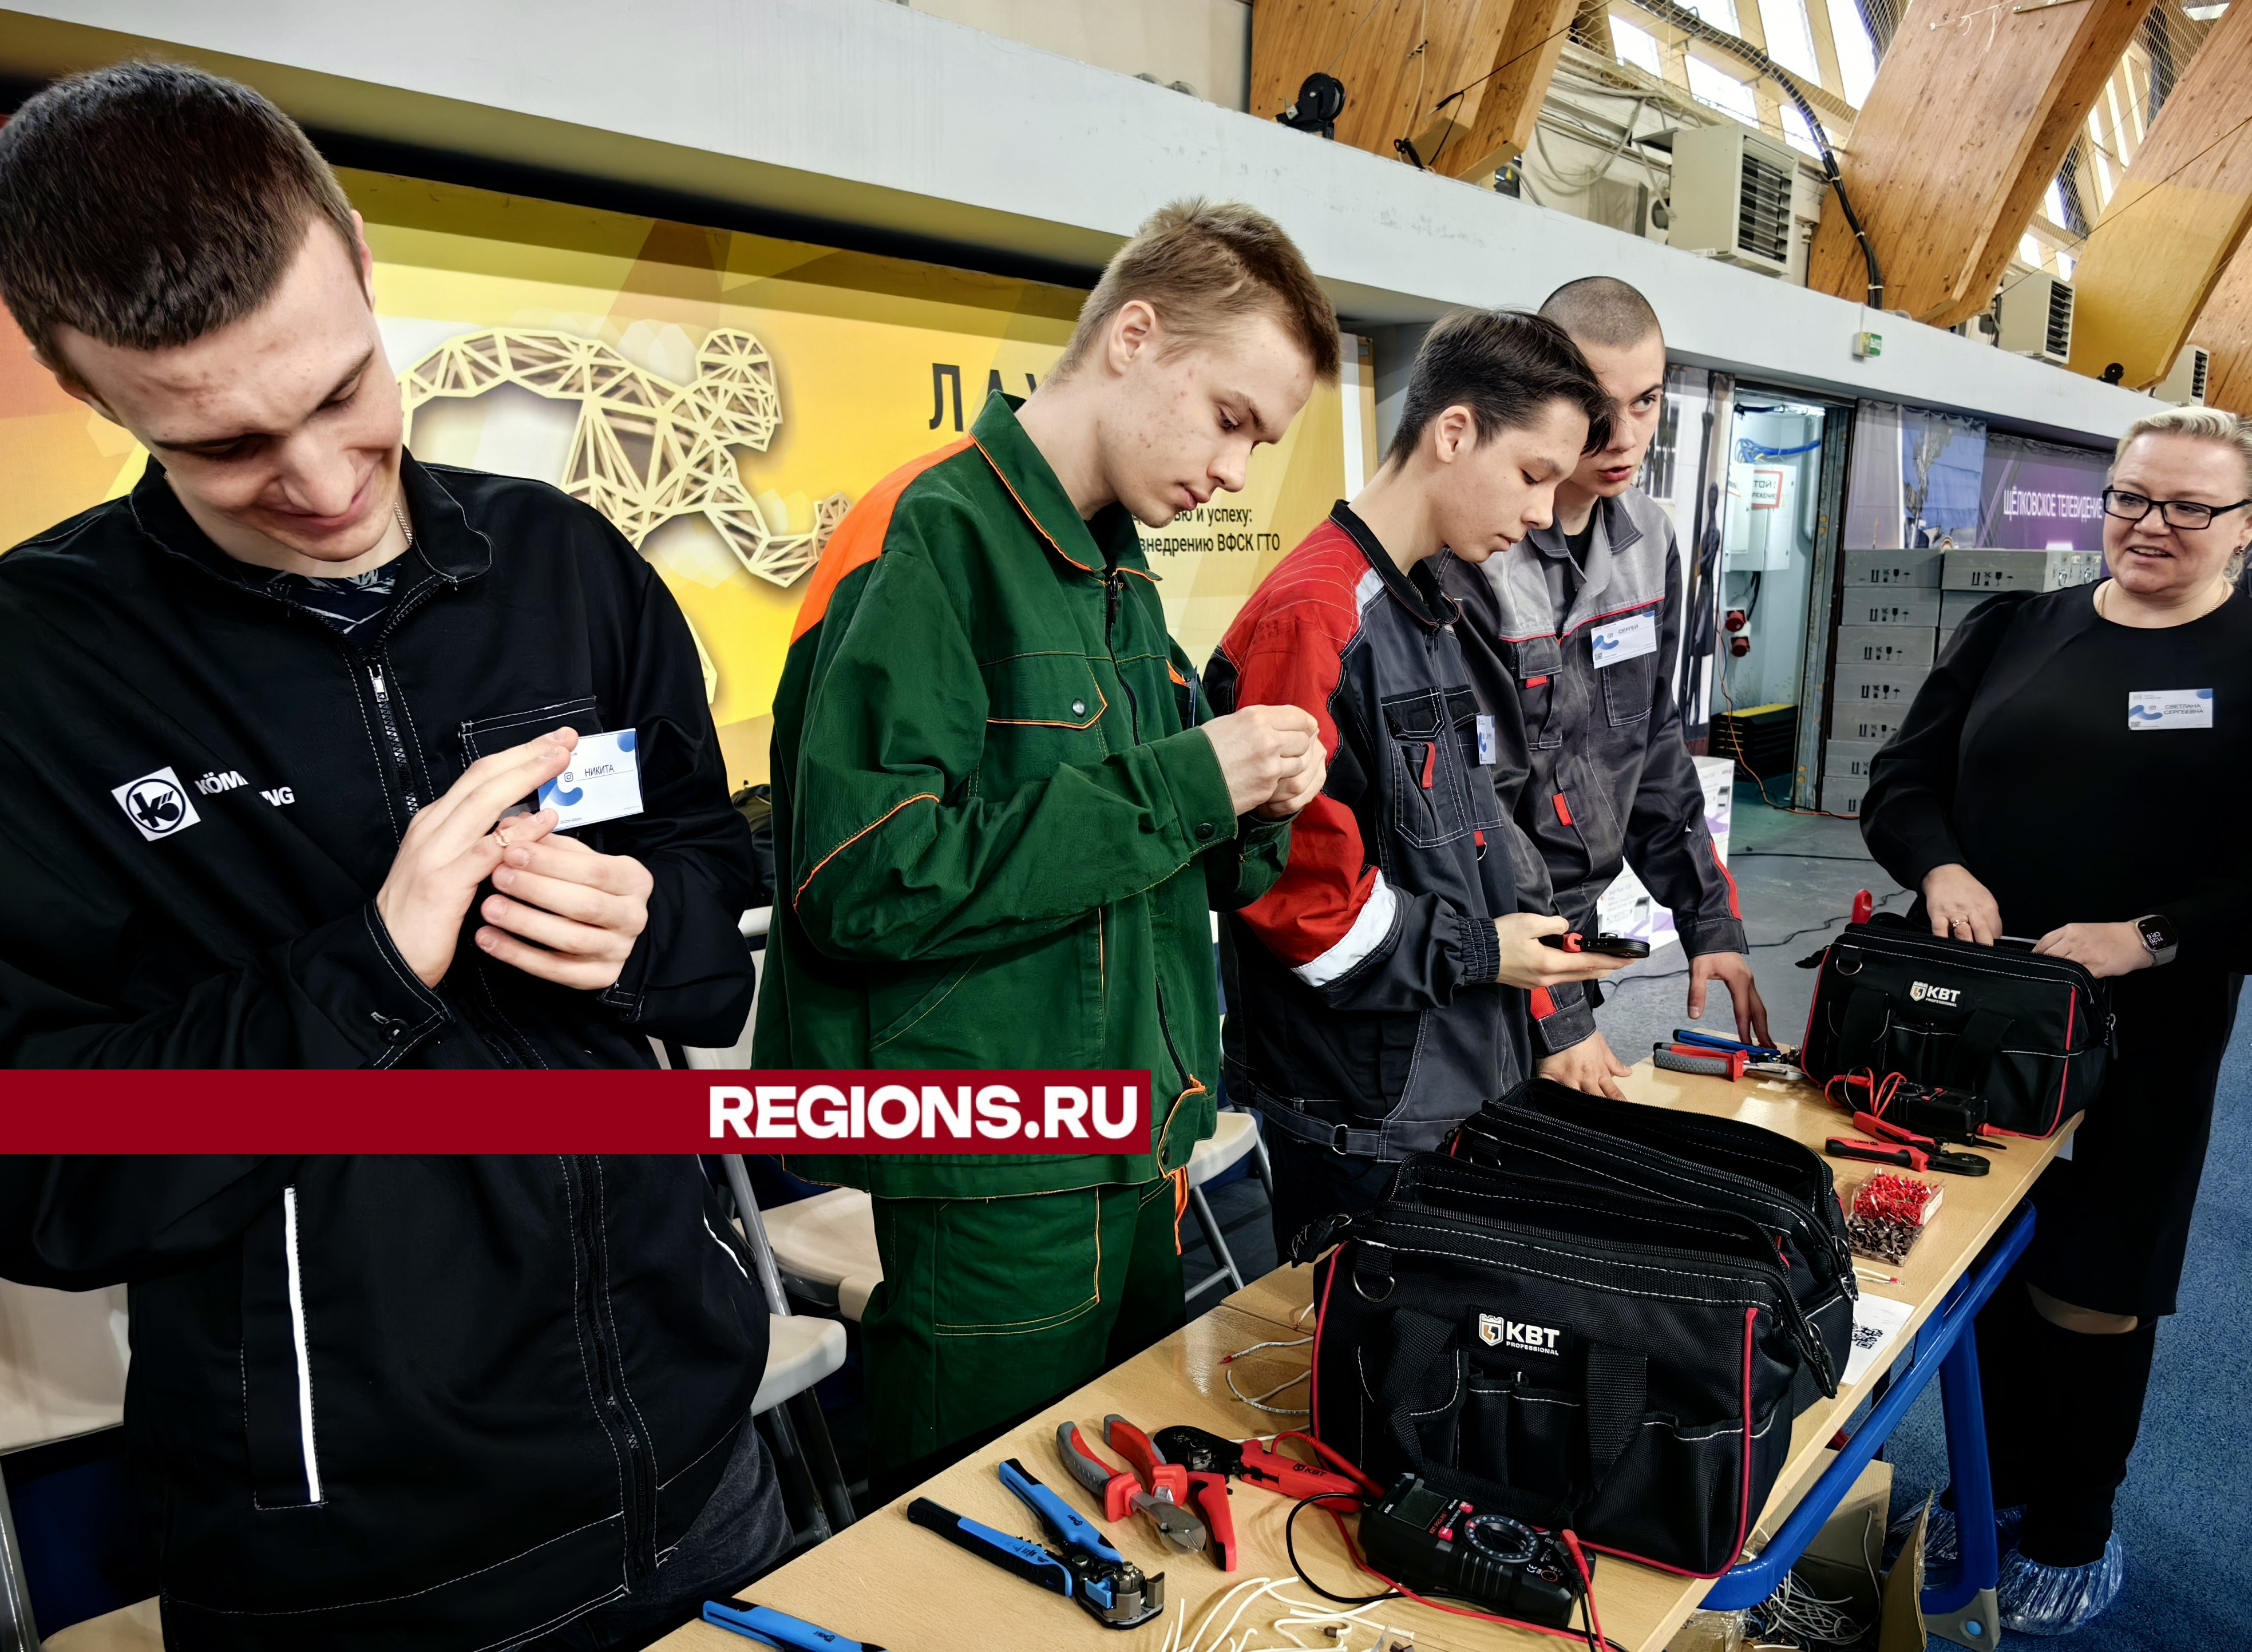 Фестиваль профессий для школьников «Путь навыков» прошел в Щелкове